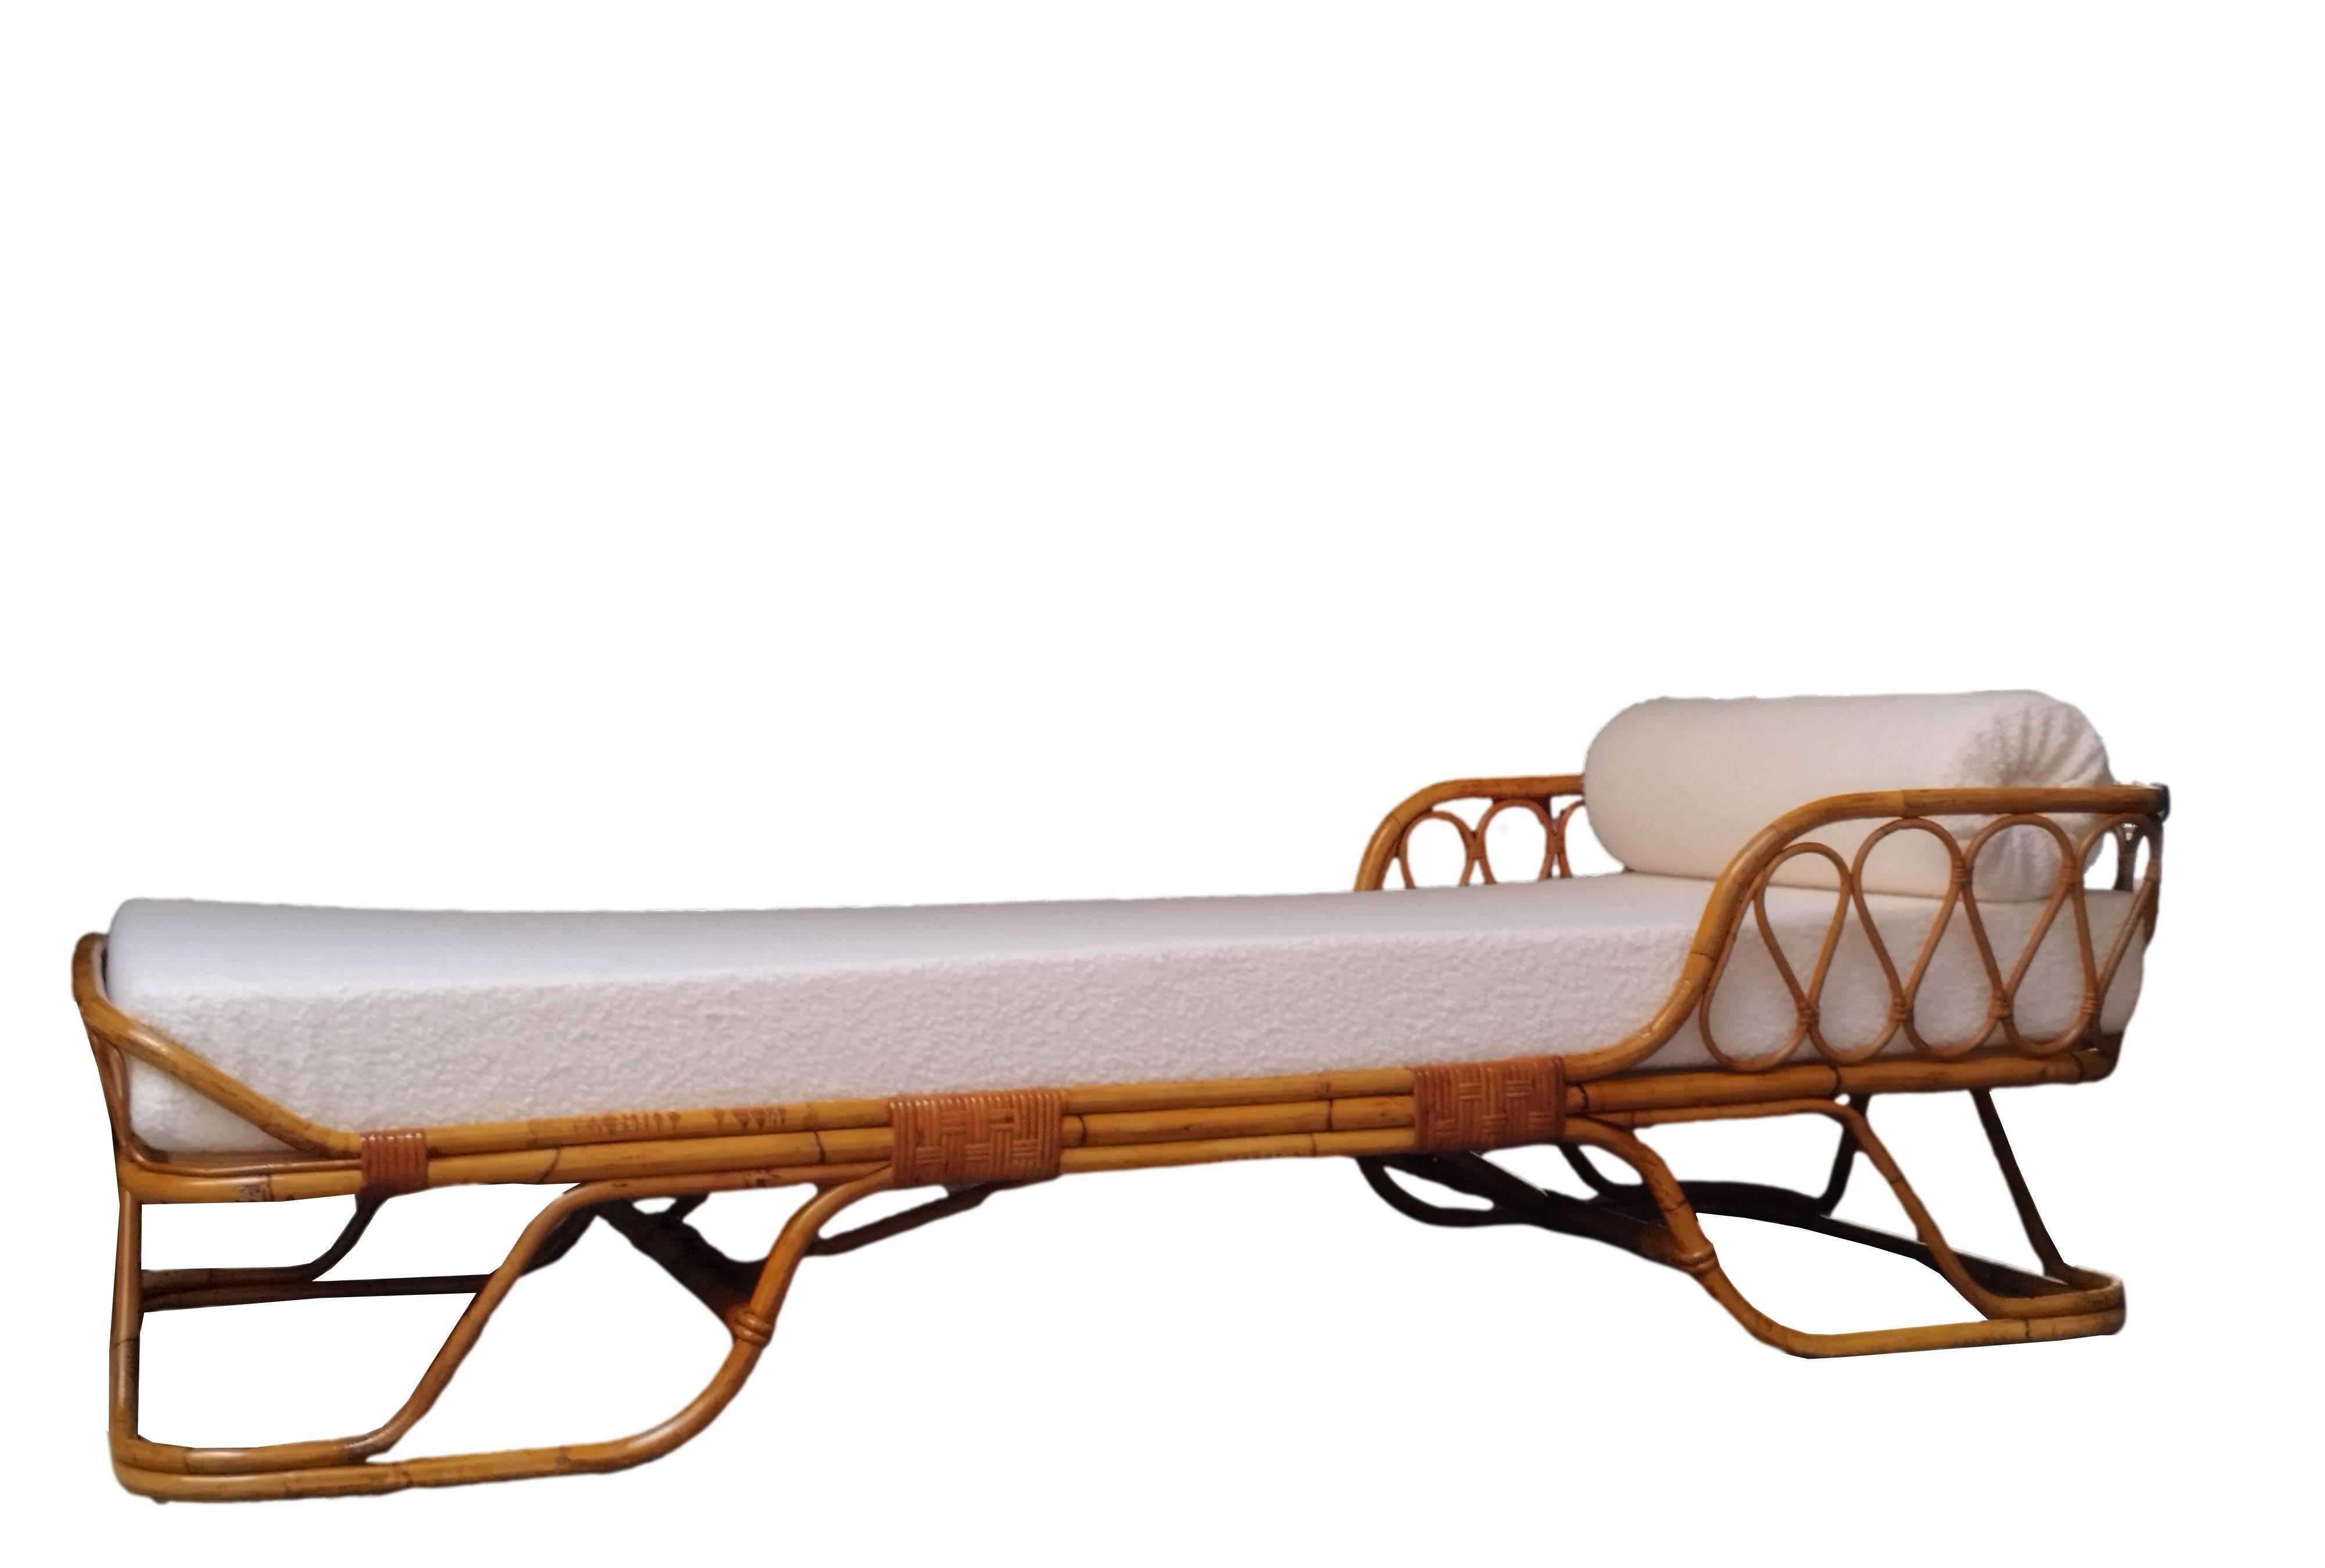 Ein prächtiges geschwungenes Bambus-Tagesbett, das Tito Agnoli in den 1960er Jahren für Bonacina entworfen hat. Das Bett besteht vollständig aus einem Bambusrahmen, Rattan und Binsenverbindungen mit einem durchgehenden Kreismuster aus Bambus.